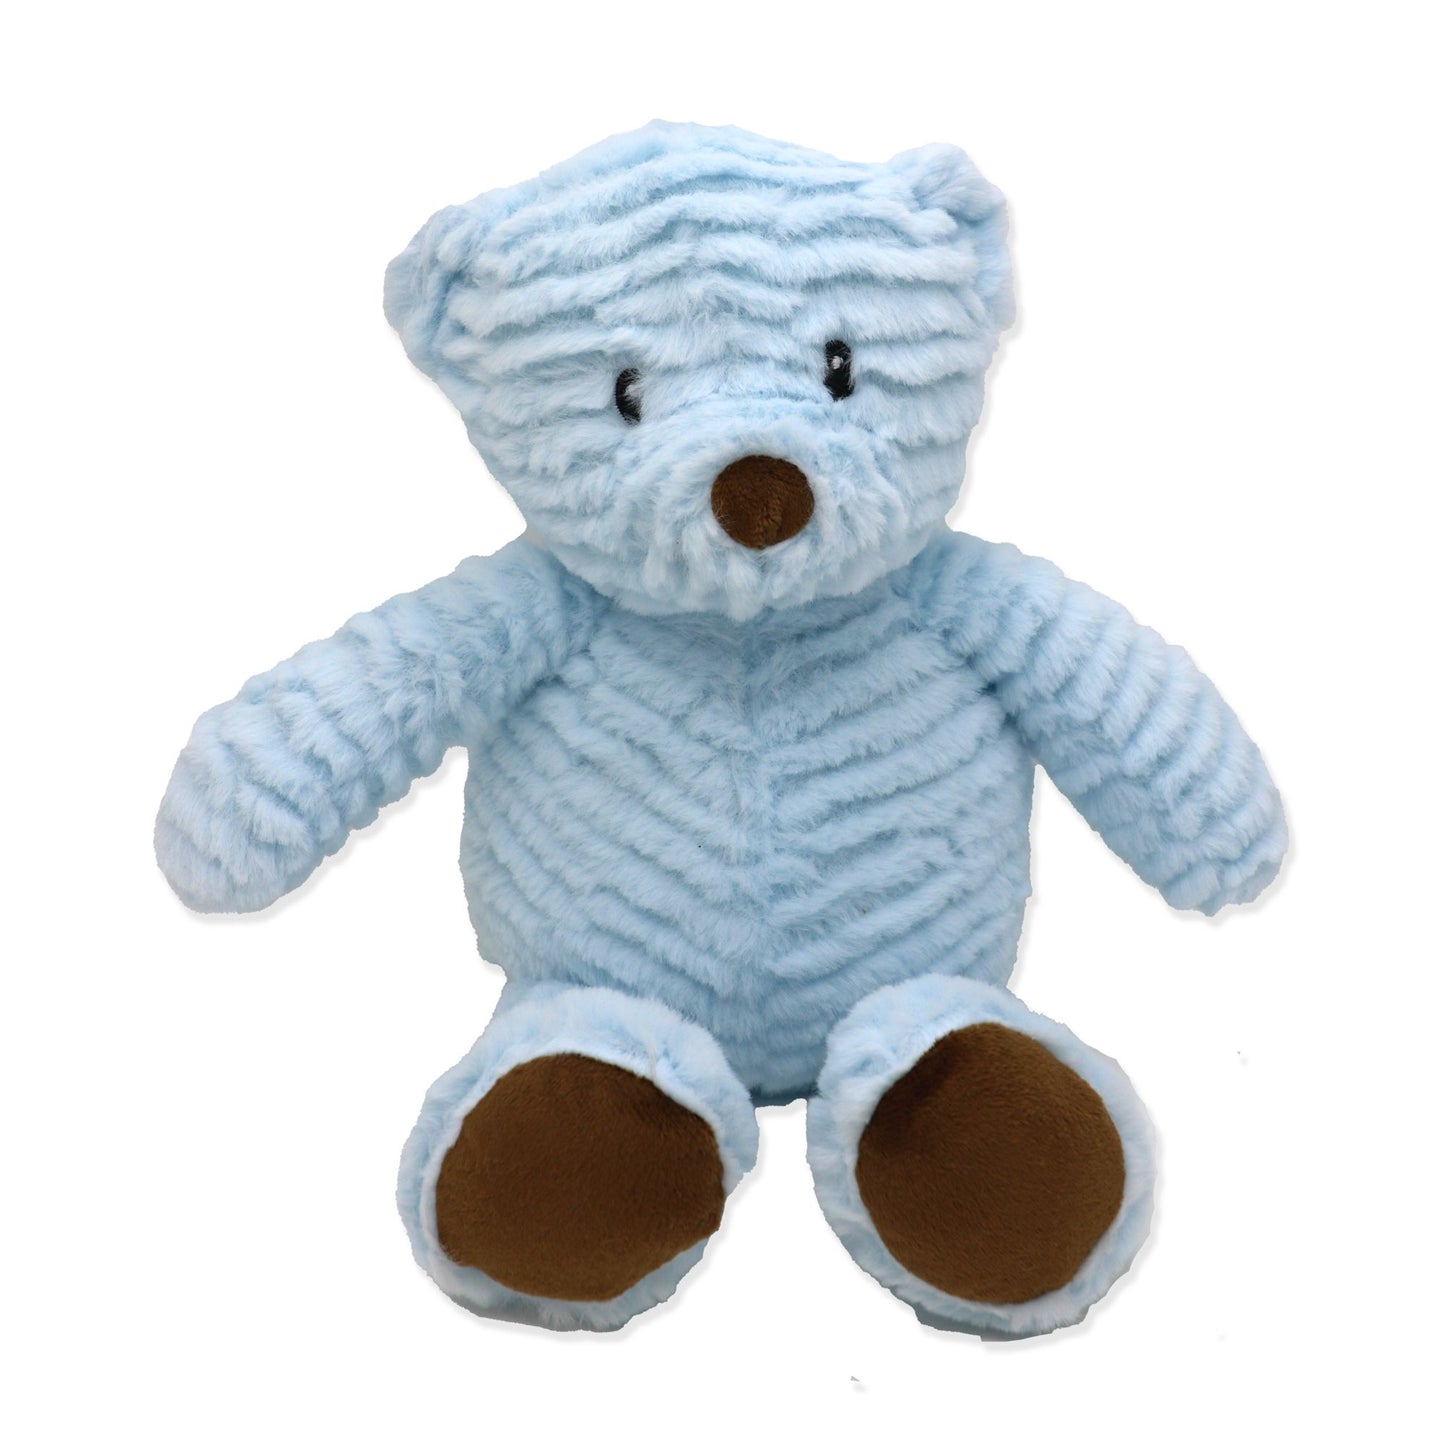 Plush Stuffed Teddy Bear - Blue